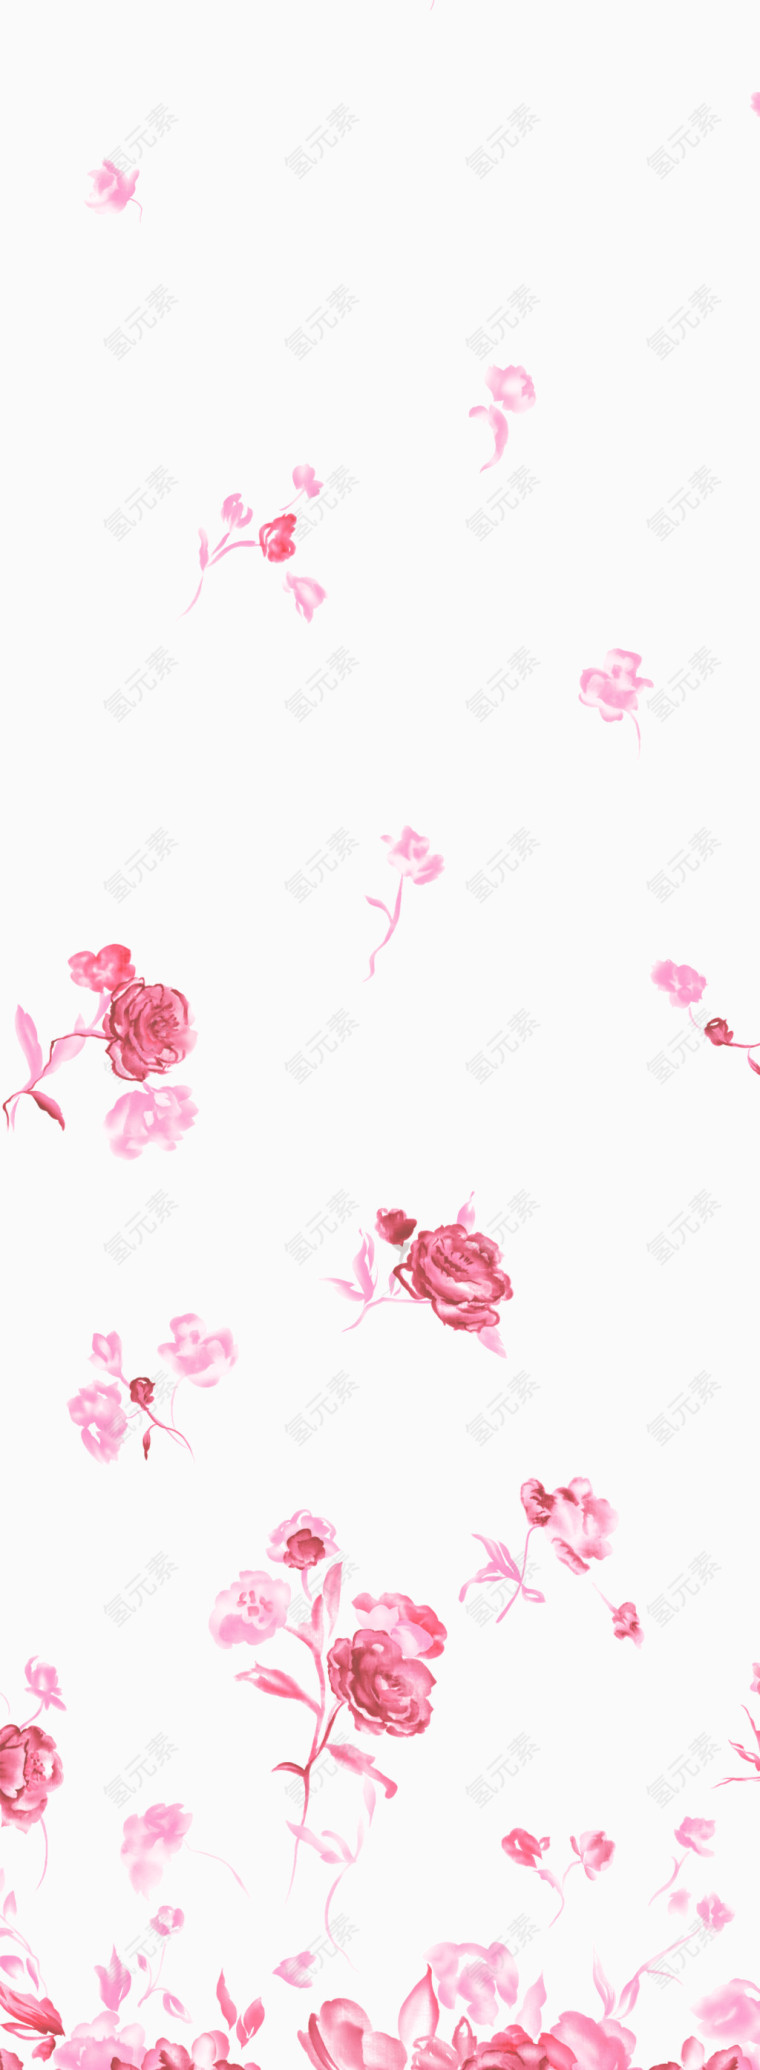 装饰多个粉色小花